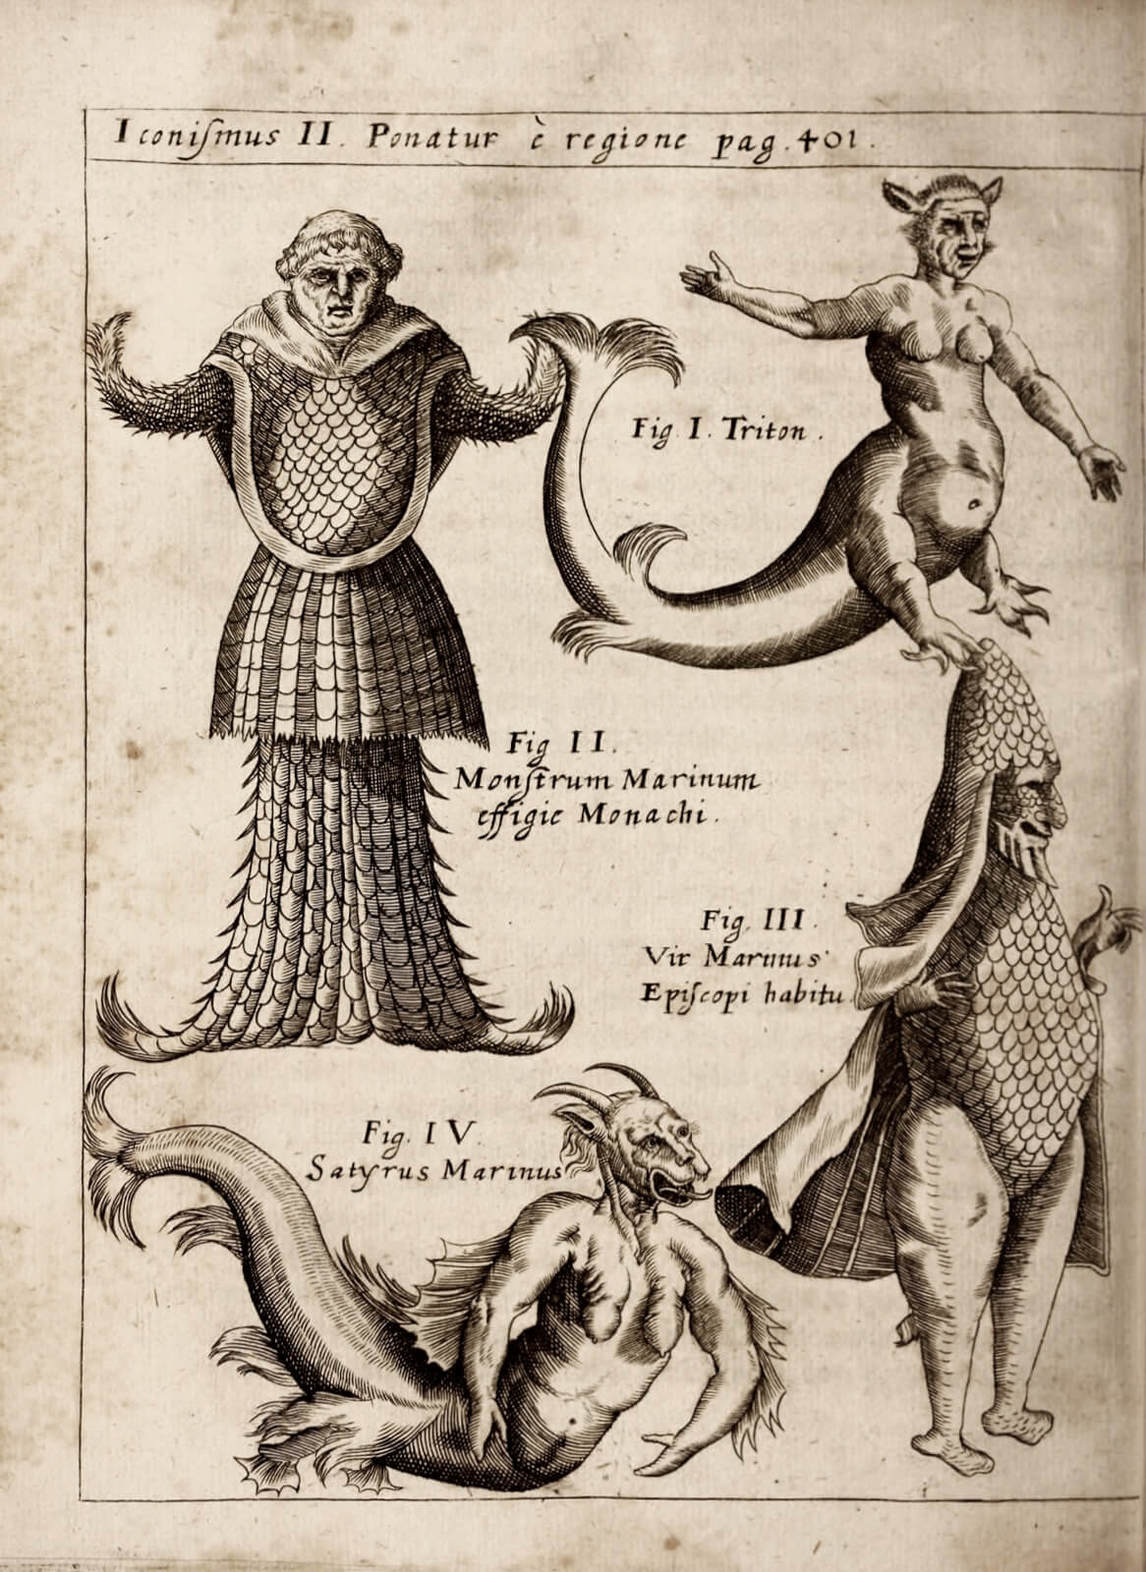 Art Canada Institute, Louis Nicolas, Illustrations of sea monsters in Gaspar Schott’s Physical Curiosities (Physica Curiosa)